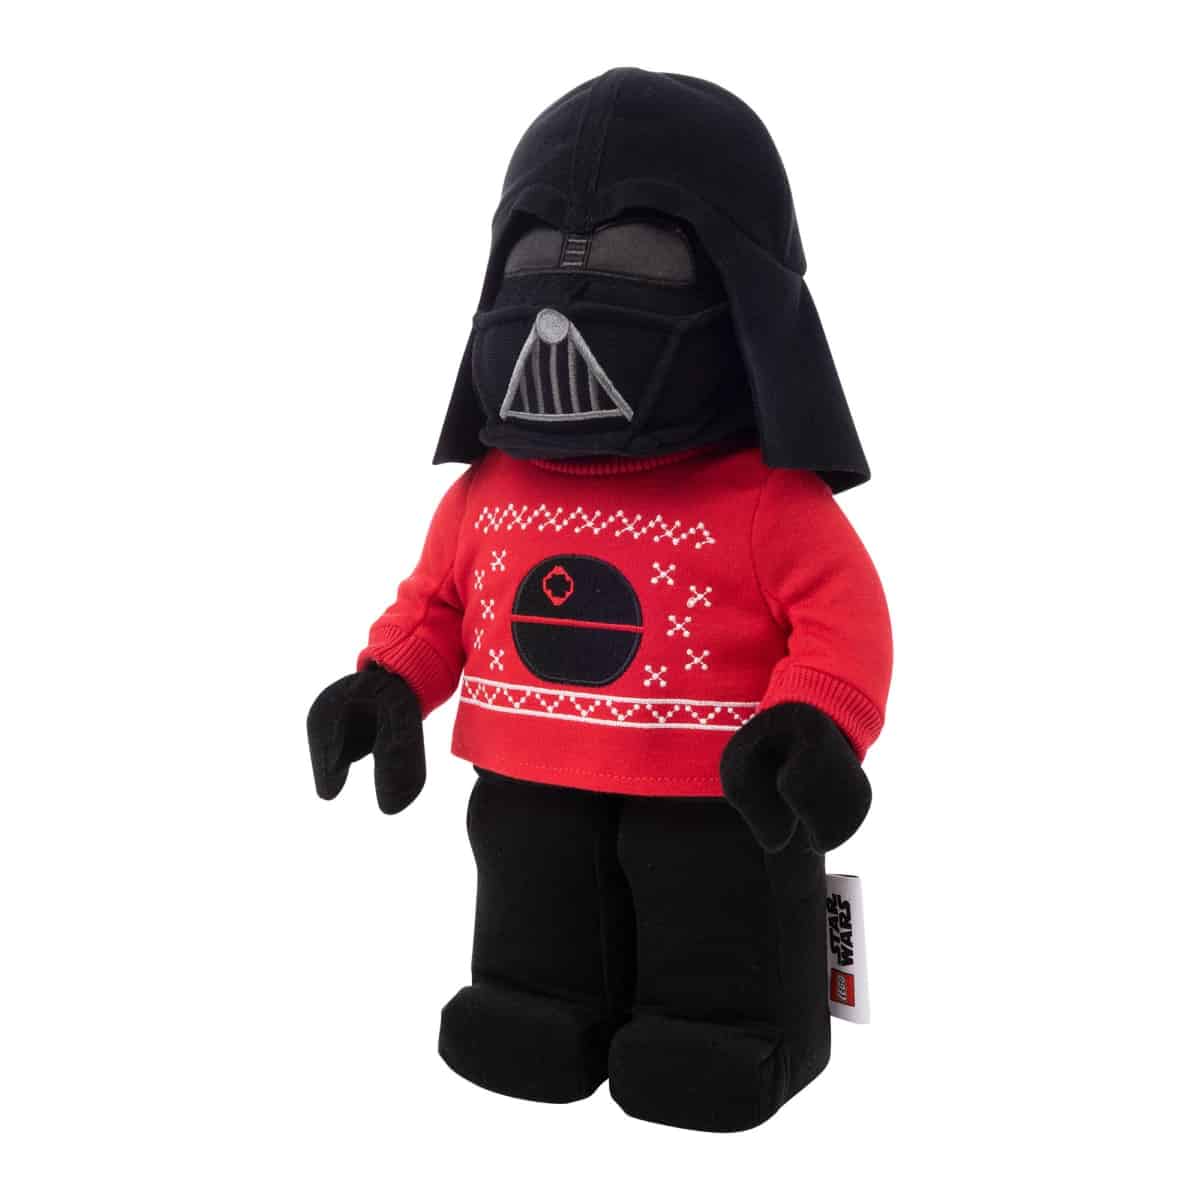 Darth Vader Holiday Plush 5007462